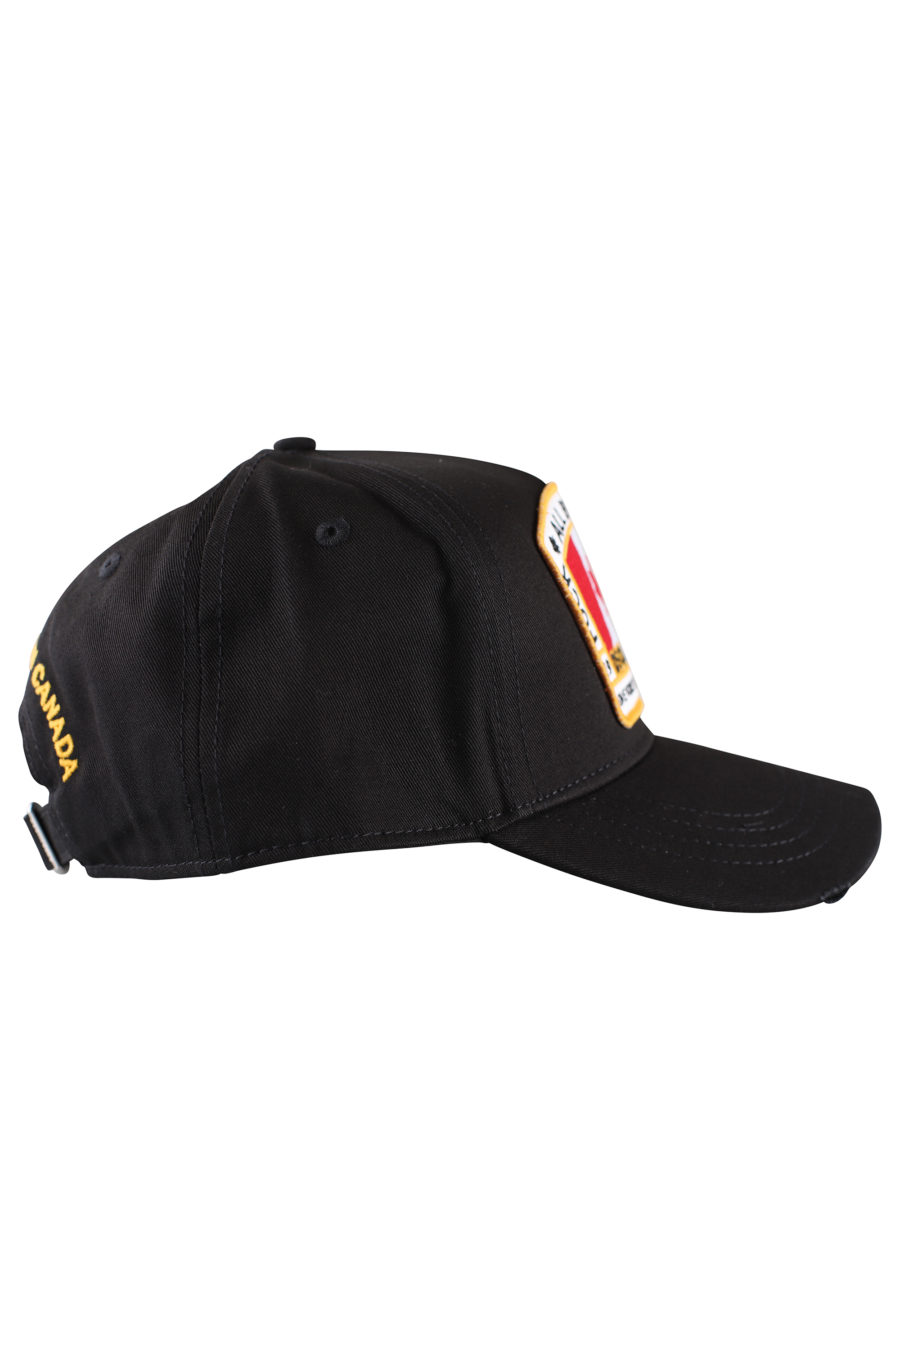 Gorra negra con logo en parche de bandera Canadá - IMG 9997